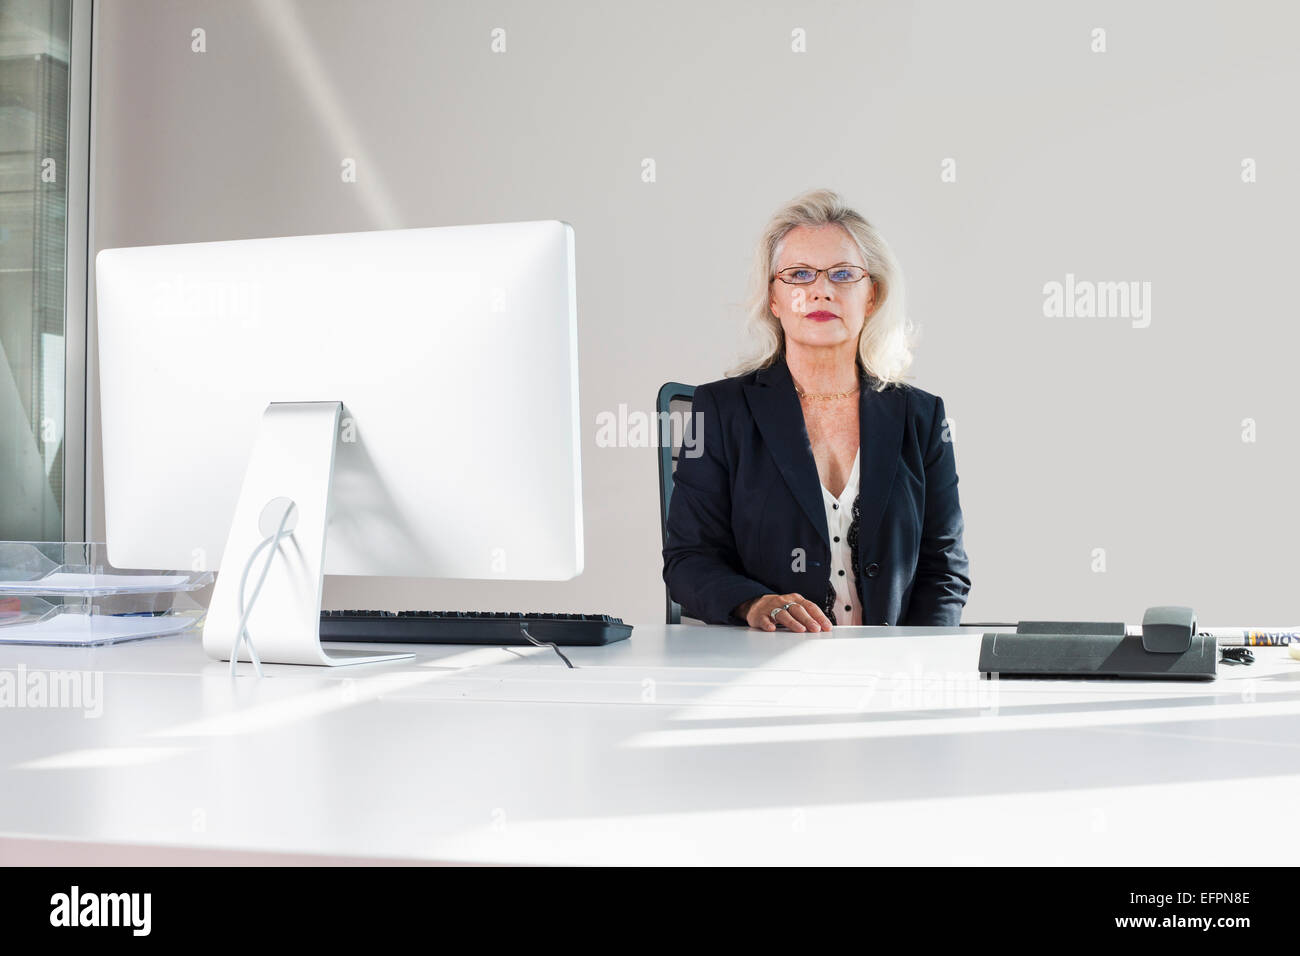 Businesswoman at desk, portrait Stock Photo